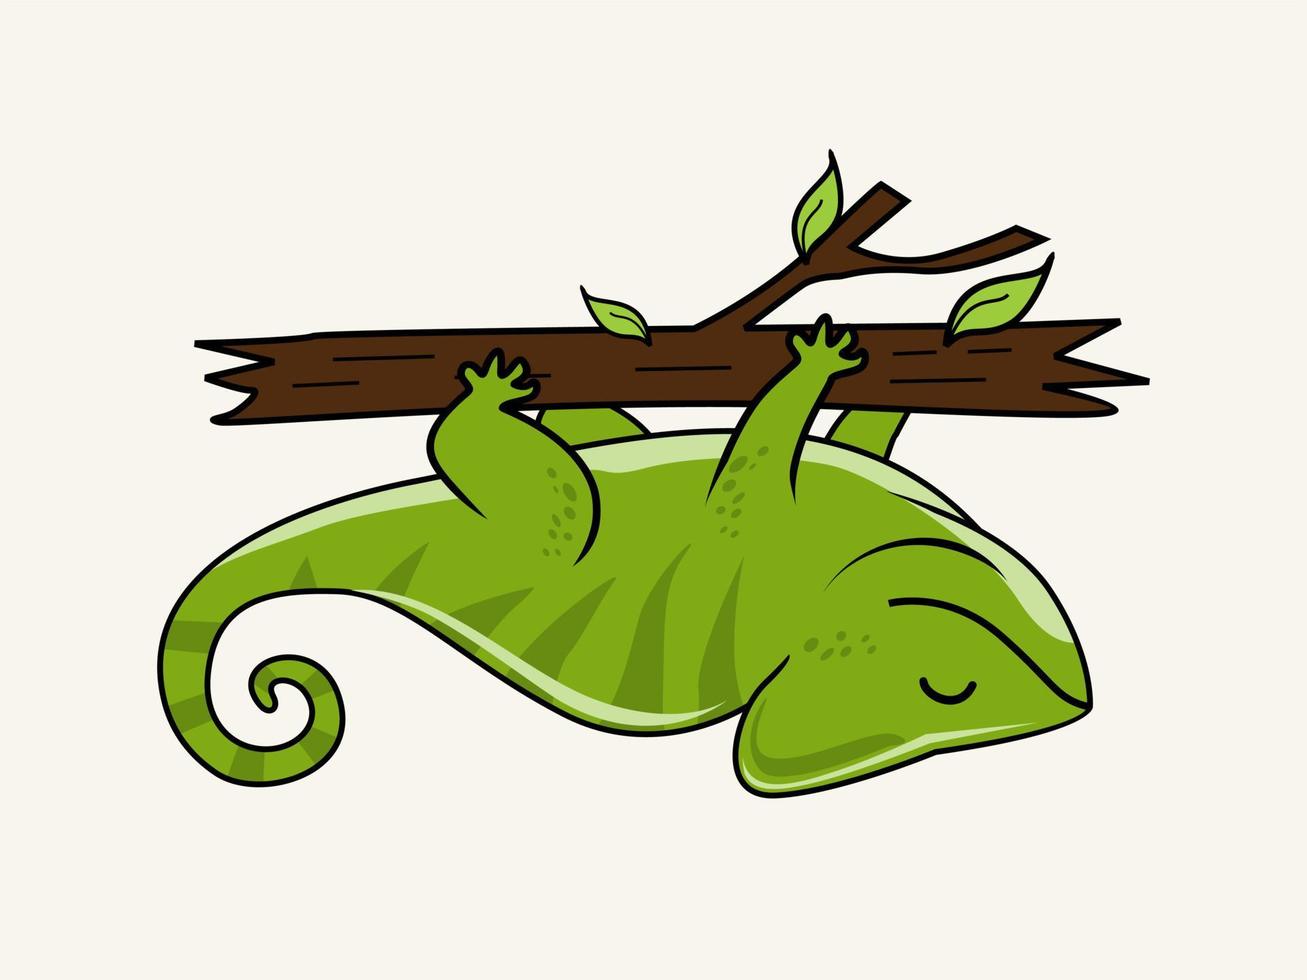 illustrazioni di cartoni animati camaleonte isolate vettore